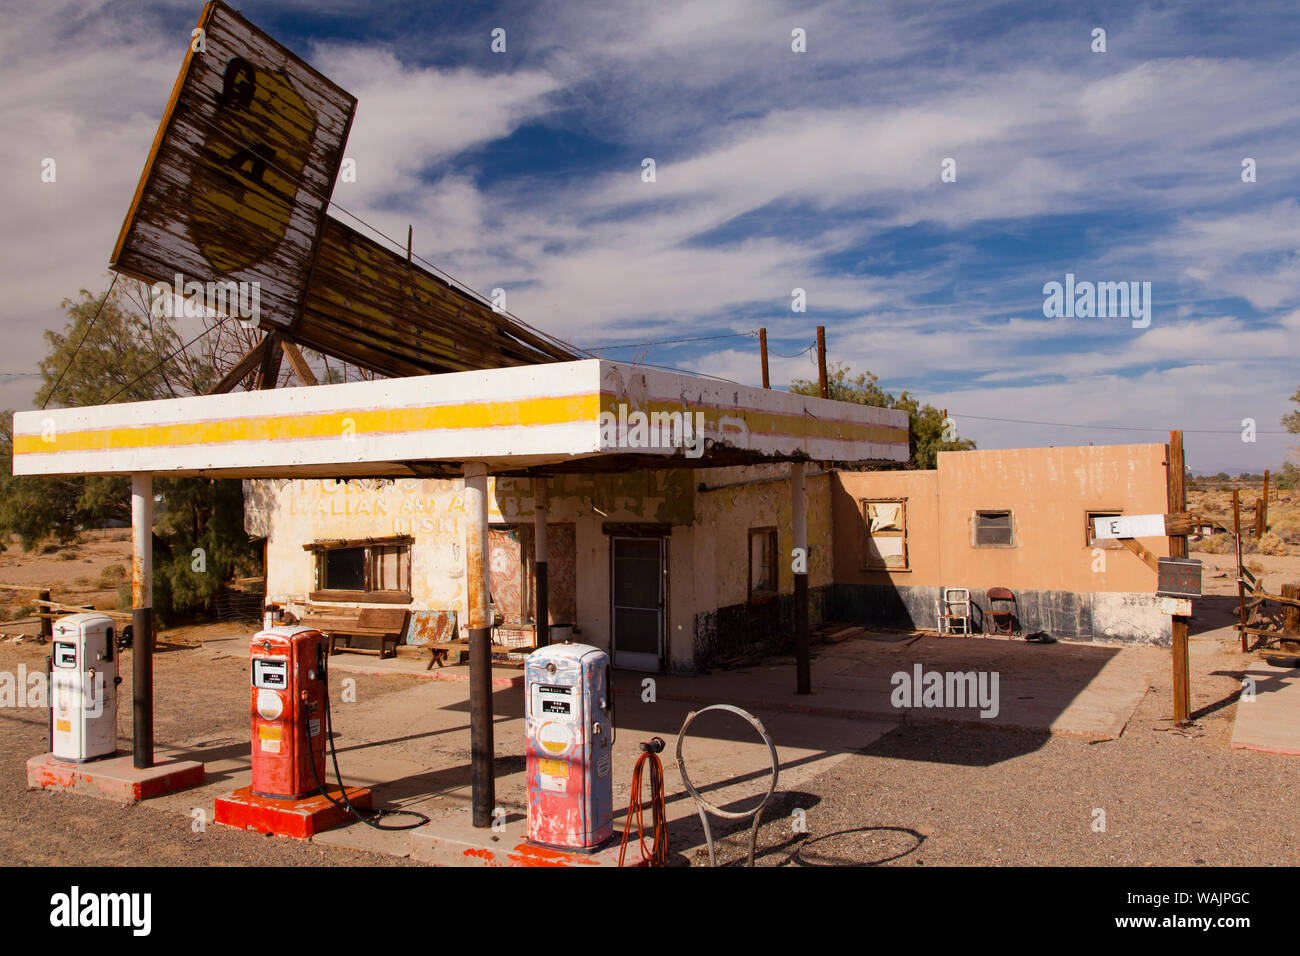 Gasolinera abandonada sobre la Ruta 66 en el desierto de Mojave, California, EE.UU. Foto de stock